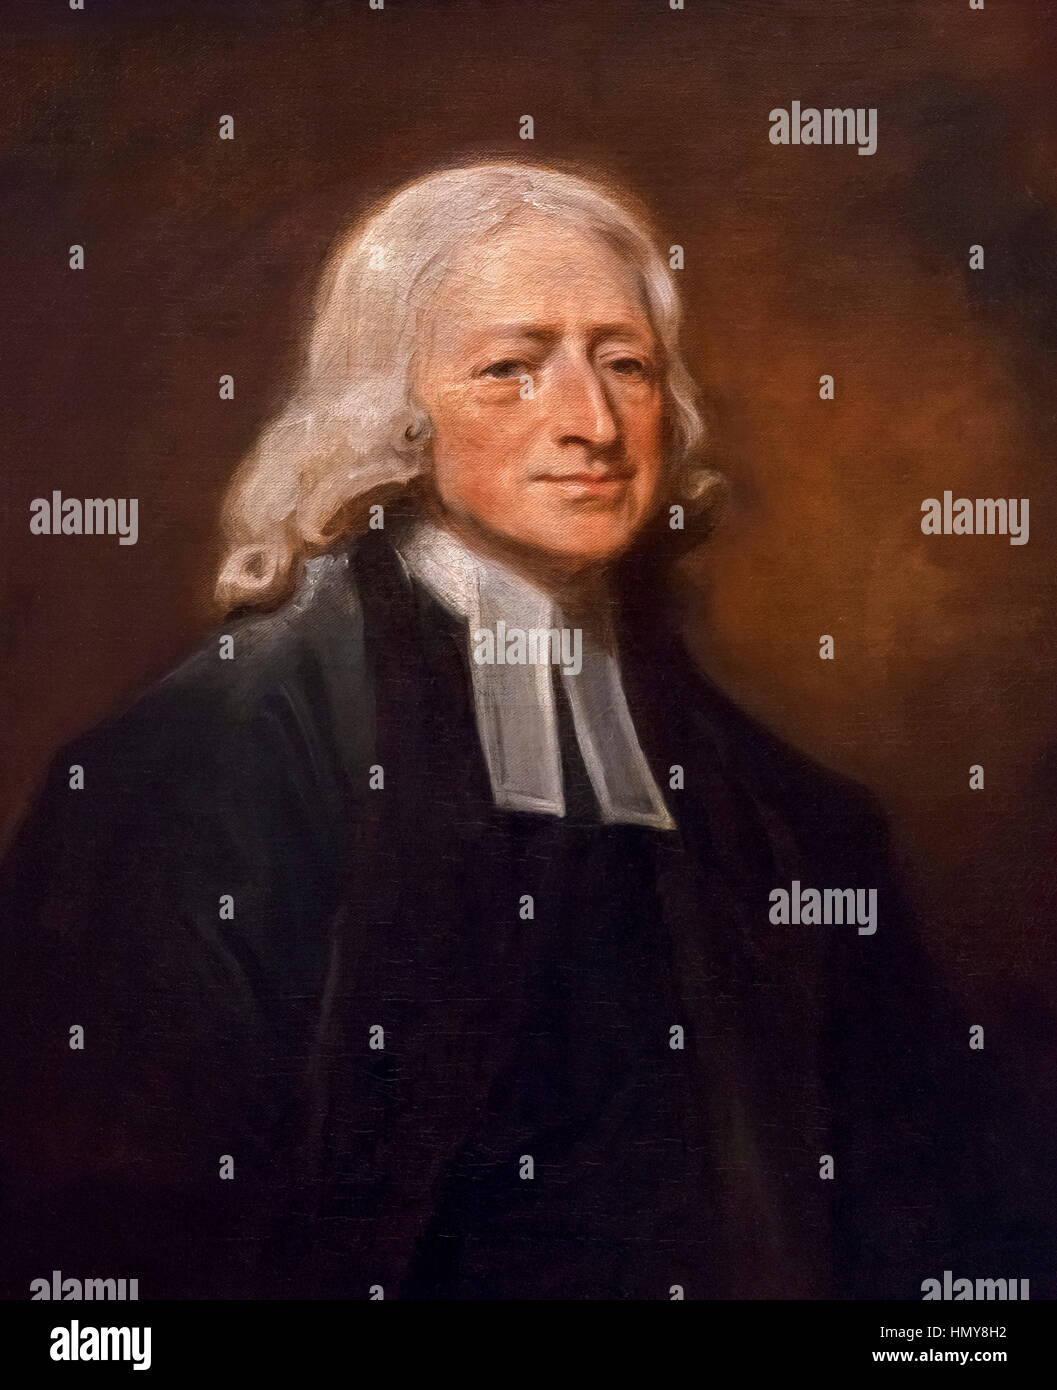 John Wesley. Ritratto del settecento il ministro e il fondatore del movimento metodista, John Wesley (1703-1791), da George Romney, olio su tela, c.1788-9 Foto Stock